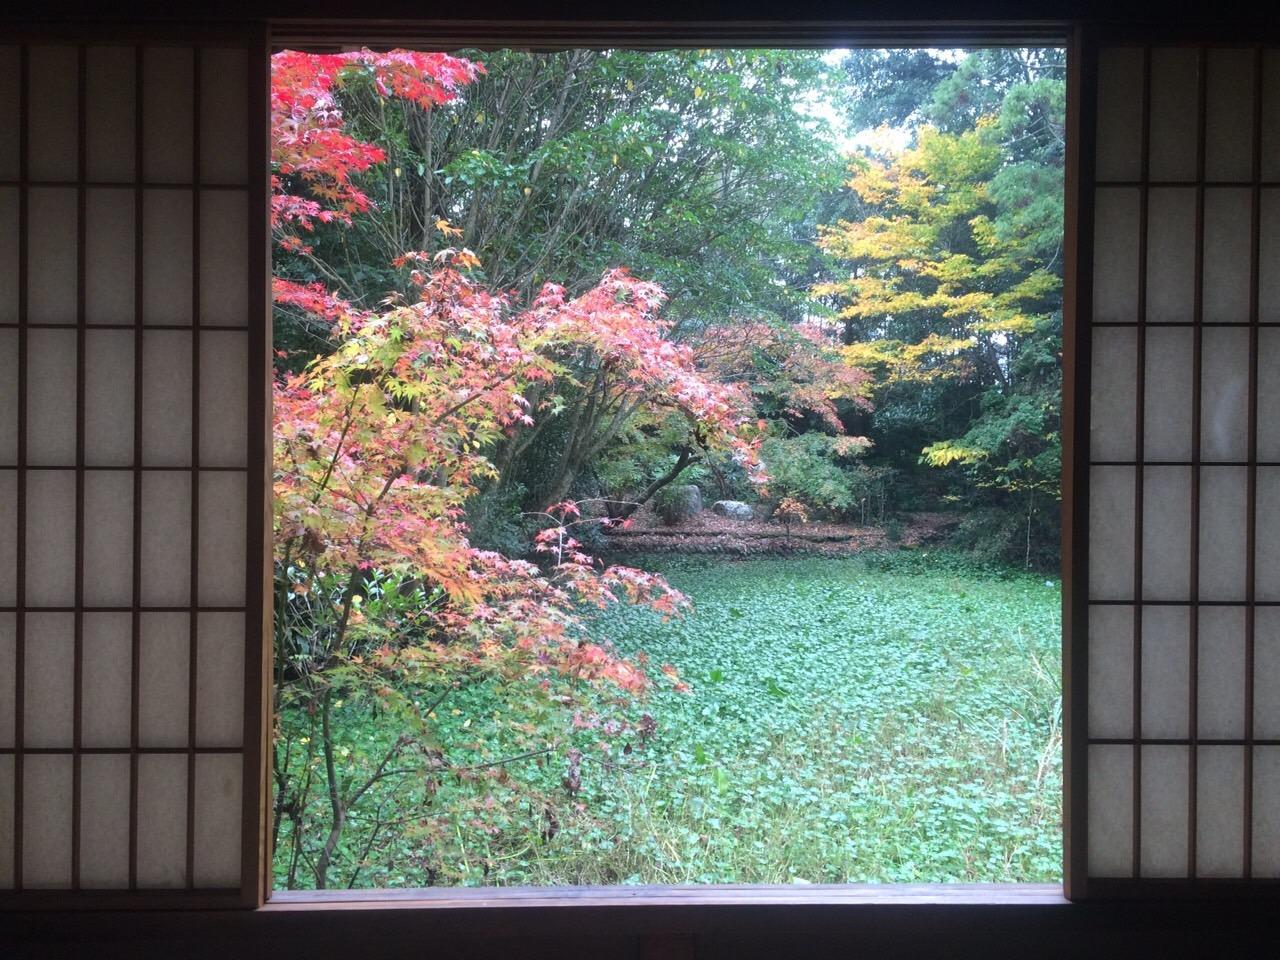 障子が開いた窓から、紅葉で赤や黄色に色づいている木々が見える美しい庭園の景色の写真